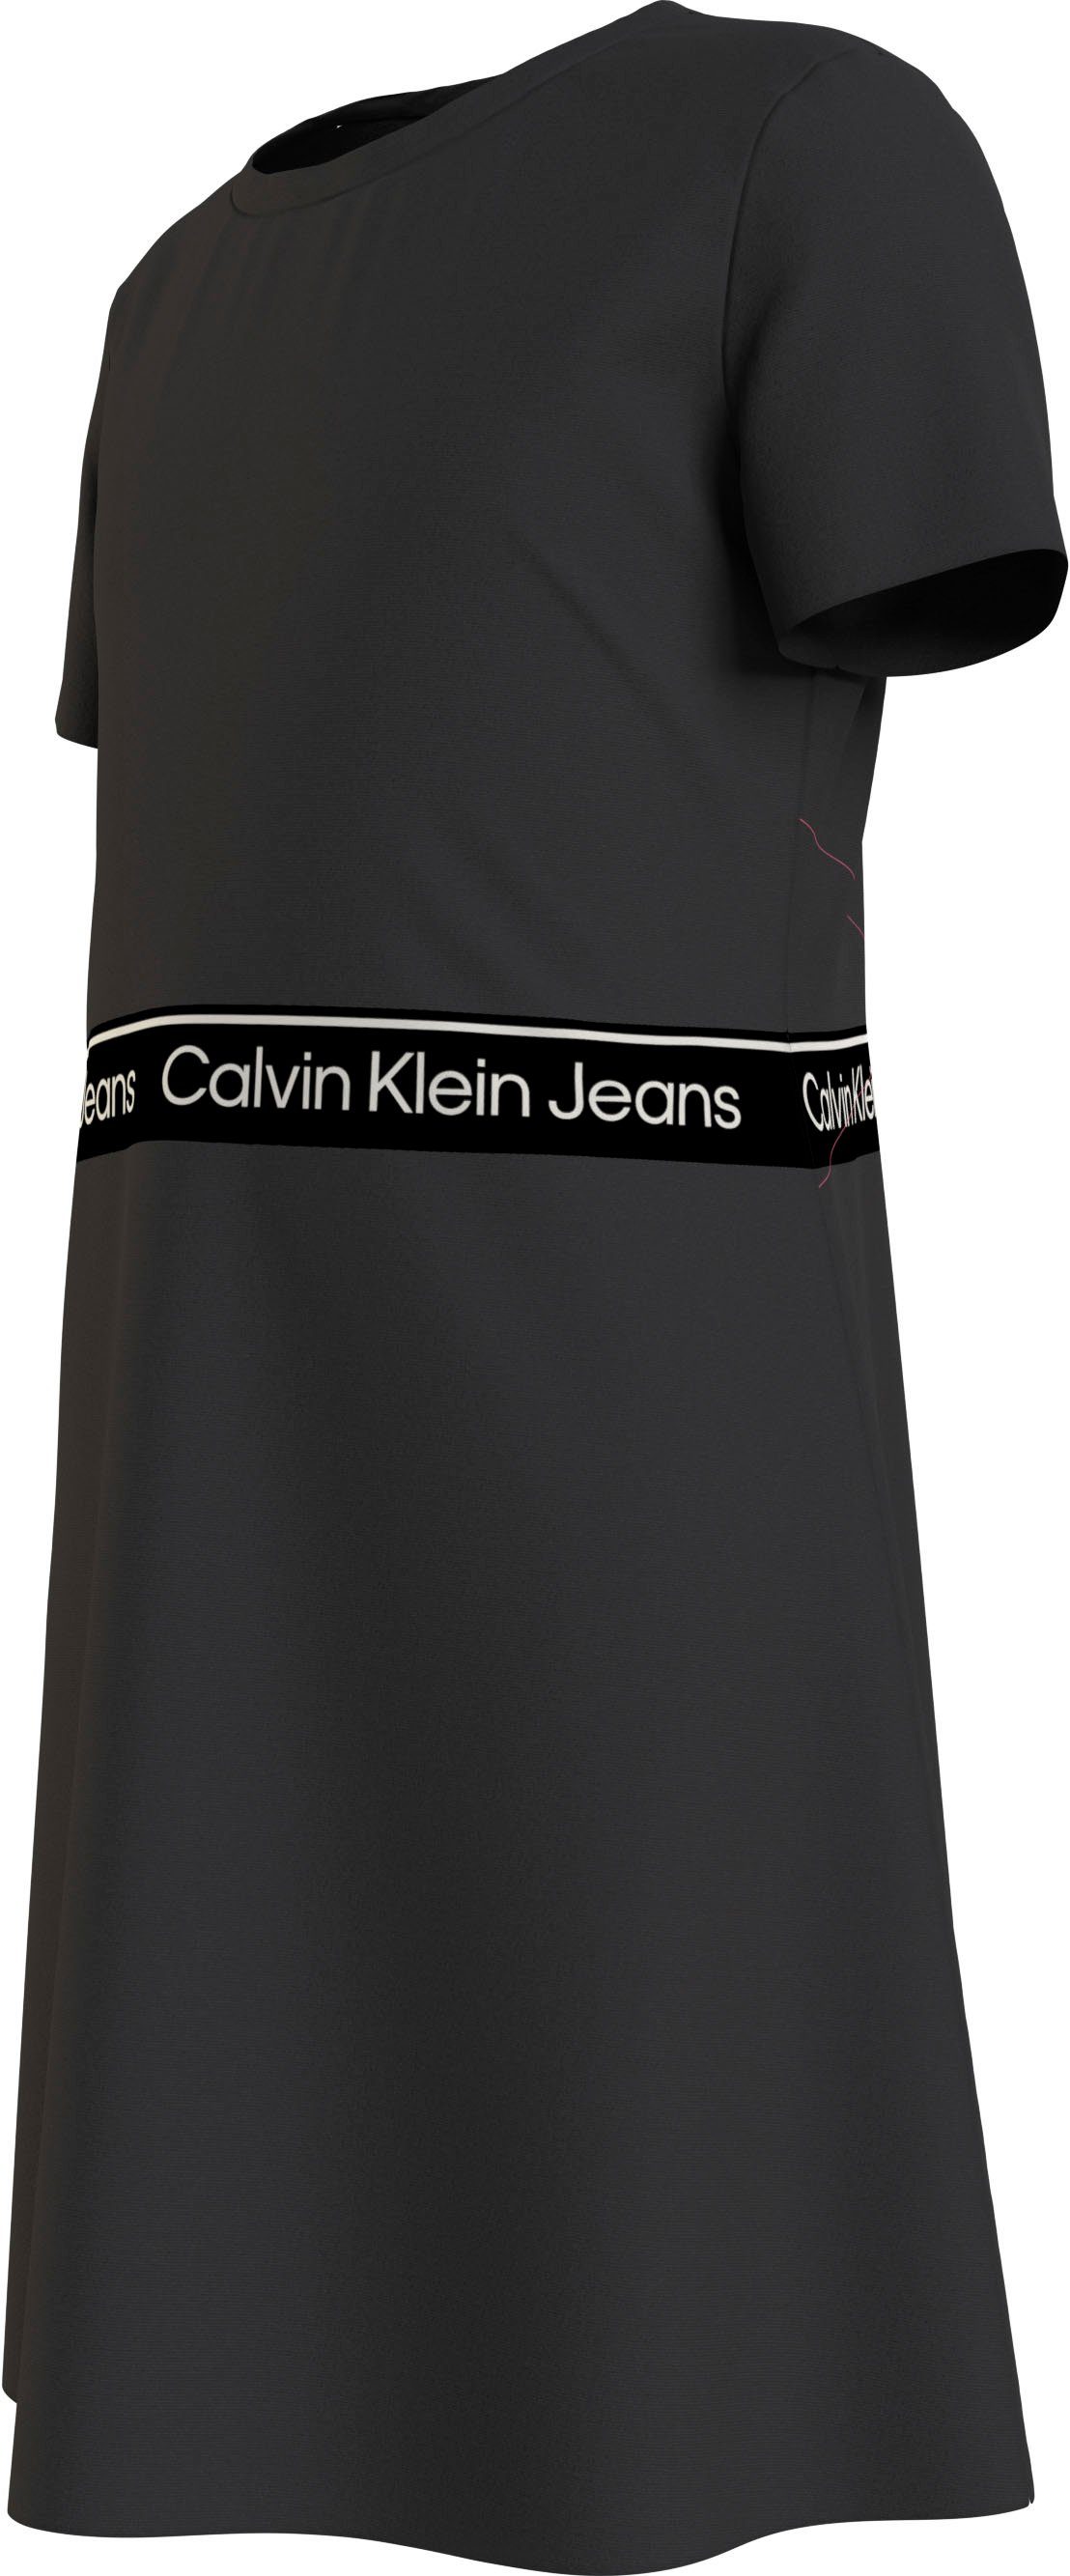 SS TAPE Ck Klein PUNTO LOGO Black Calvin DRESS Jeans Skaterkleid